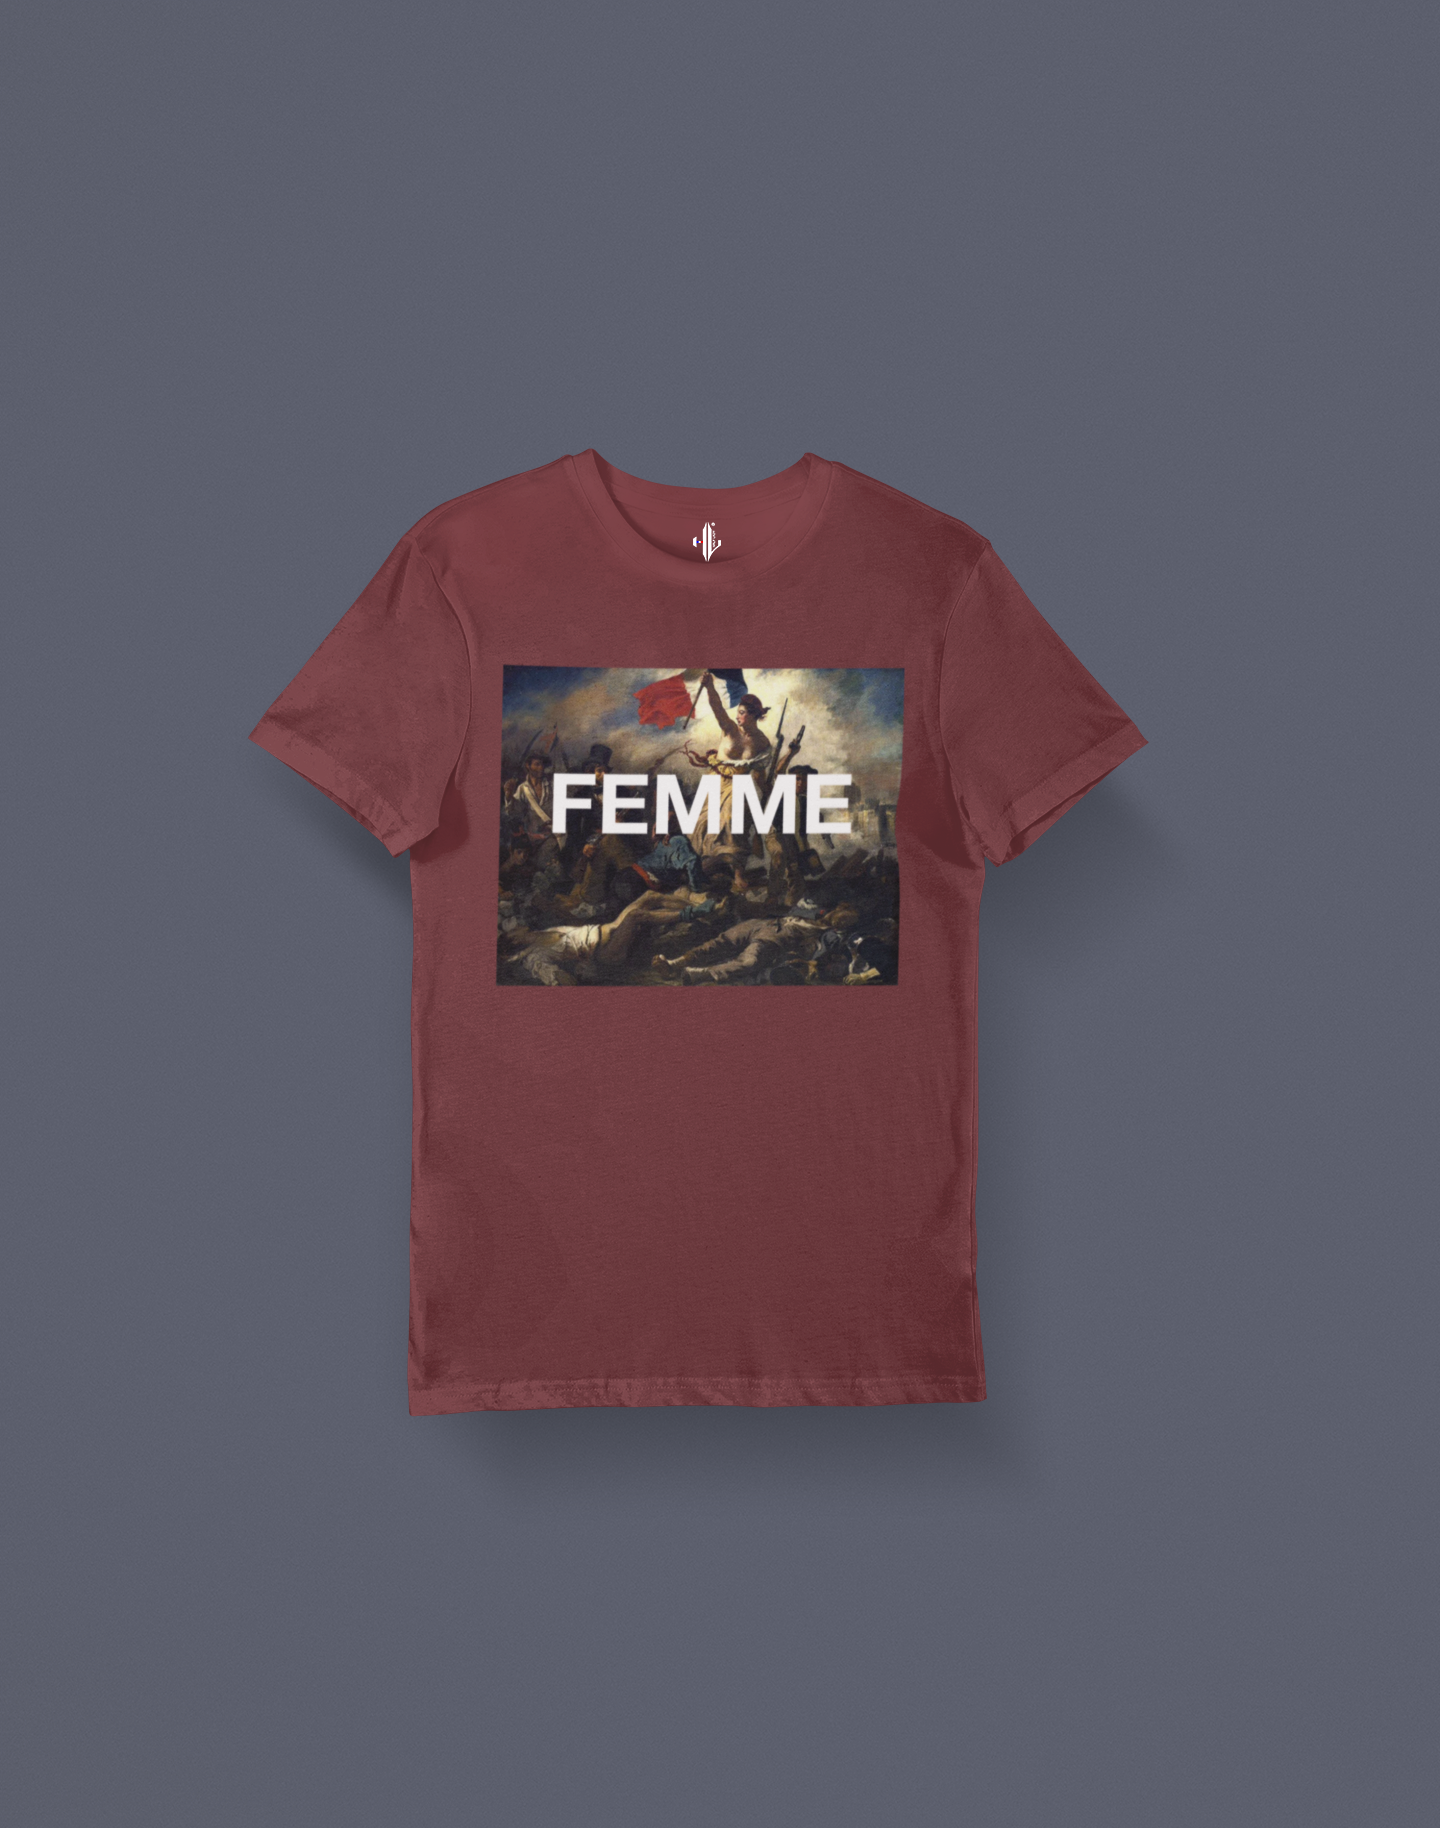 T-shirt "FEMME"